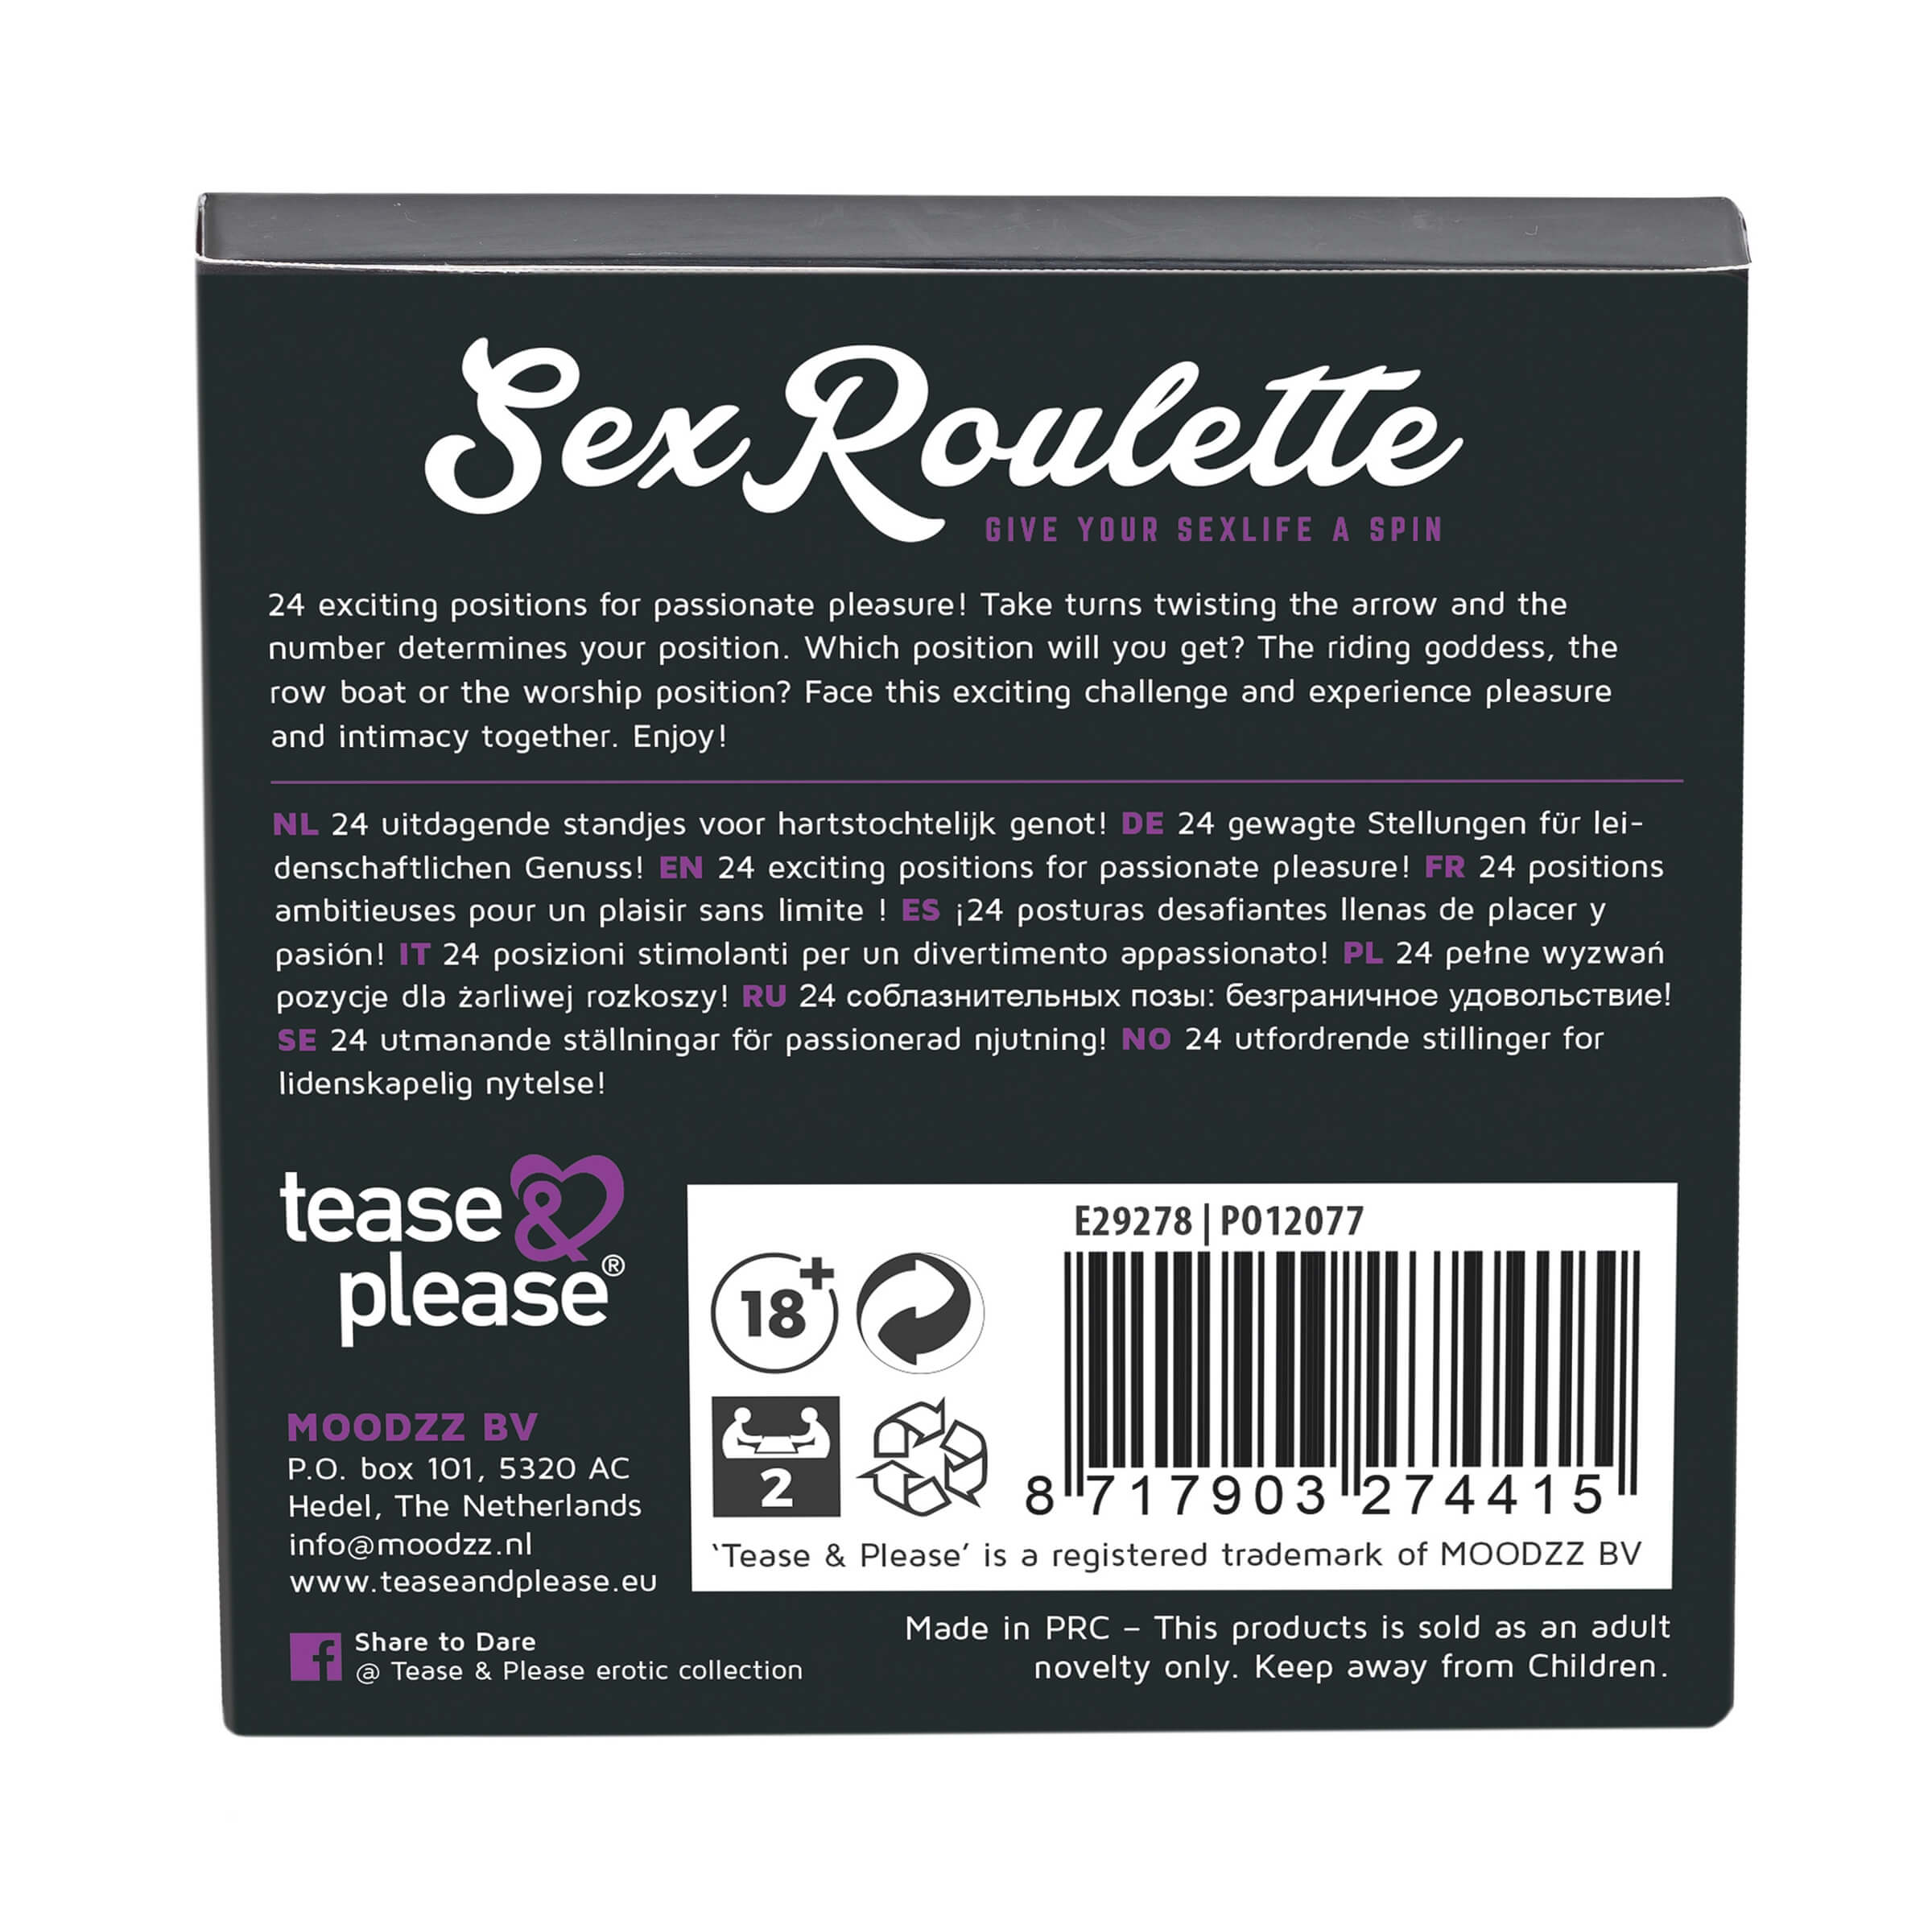 Sex Roulette Kama Sutra - szex társasjáték (10 nyelven) Erotika pároknak kép